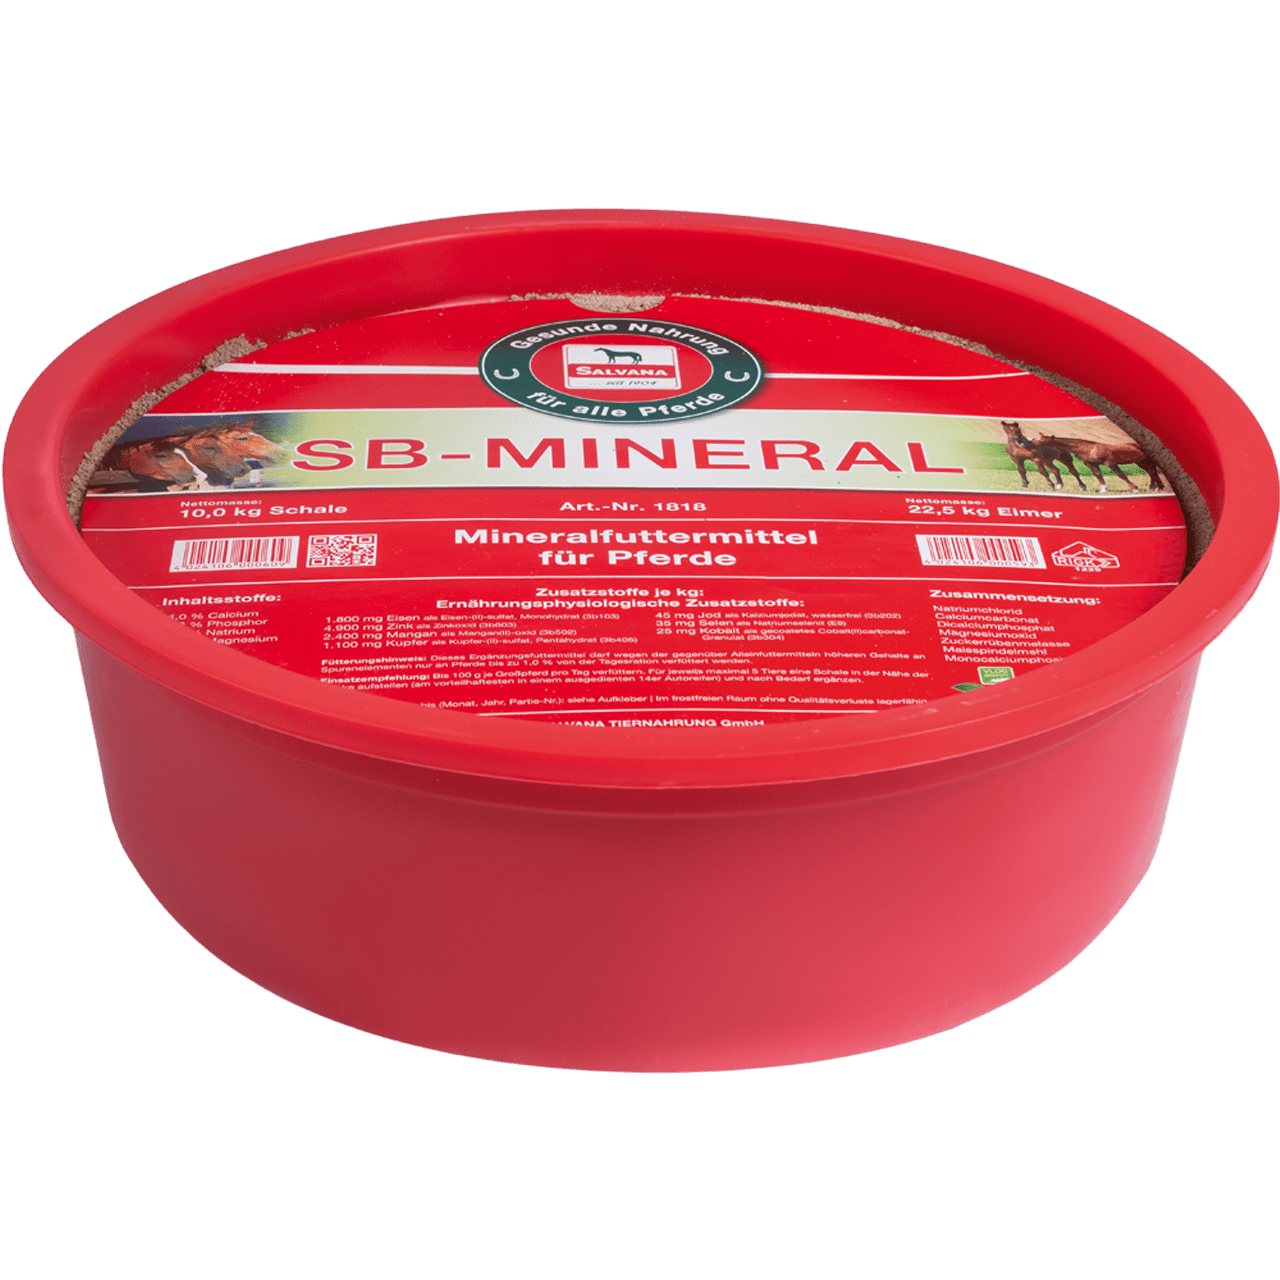 SALVANA SB-Mineral - Mineralfutter als klassische Leckschale zur Selbstbedienung auf der Weide